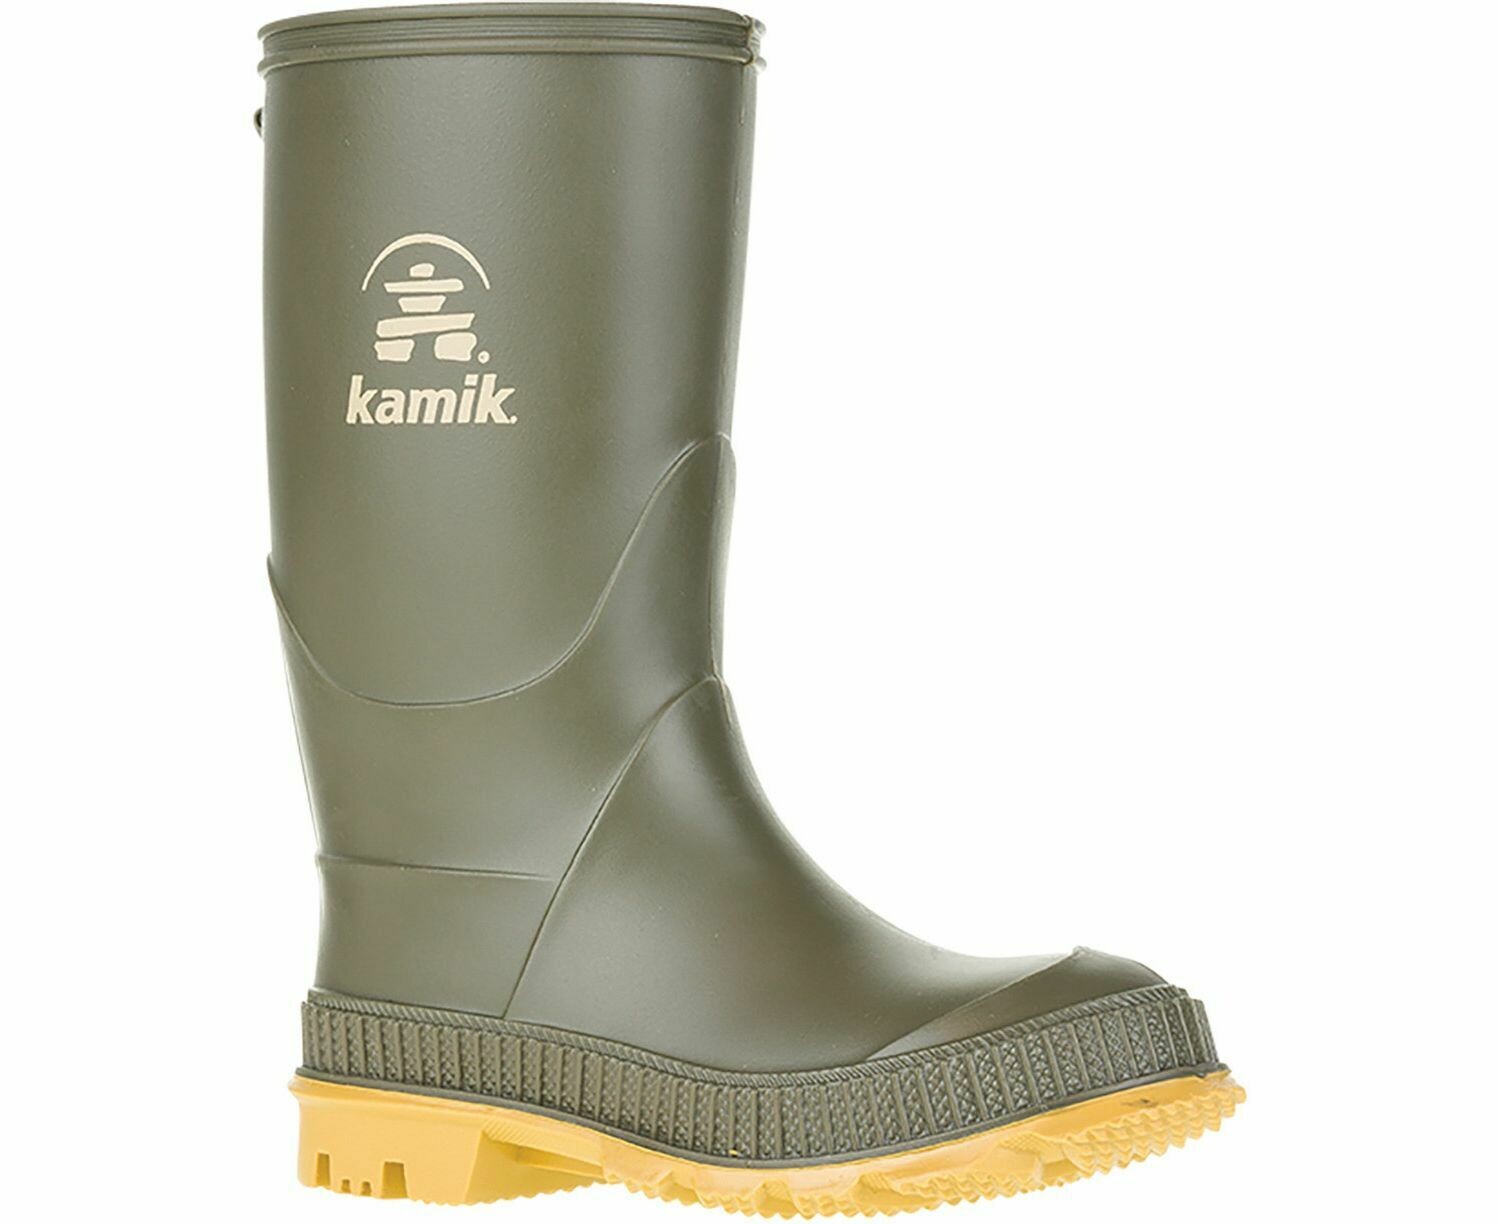 Kamik Rain Boots - Olive